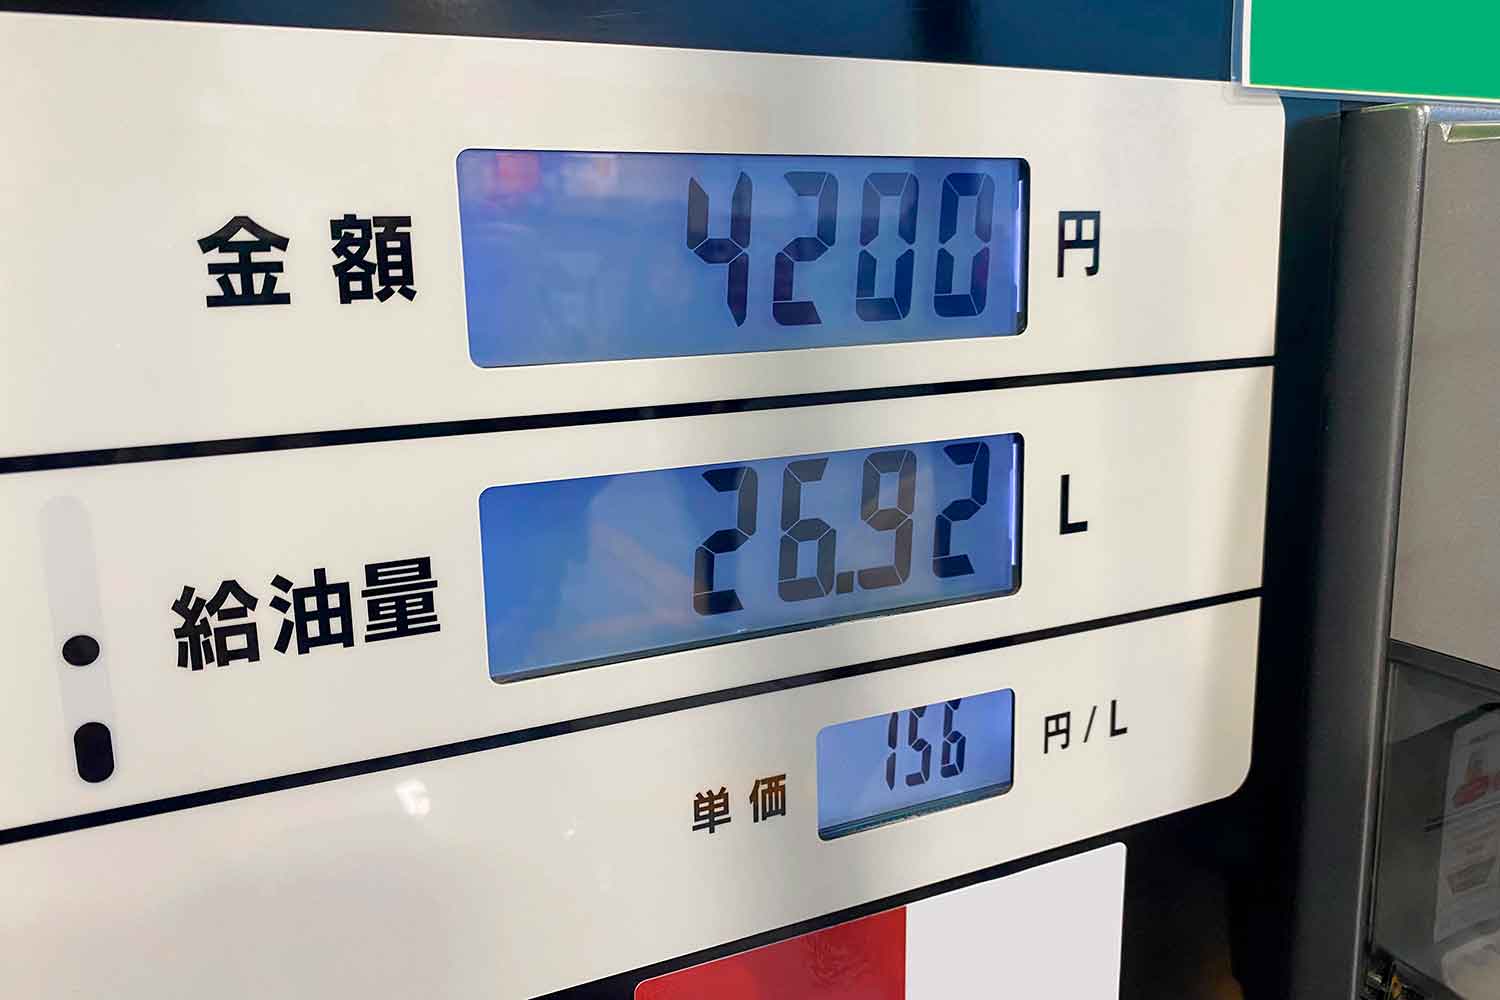 ガソリンスタンドの給油量と値段の表示板